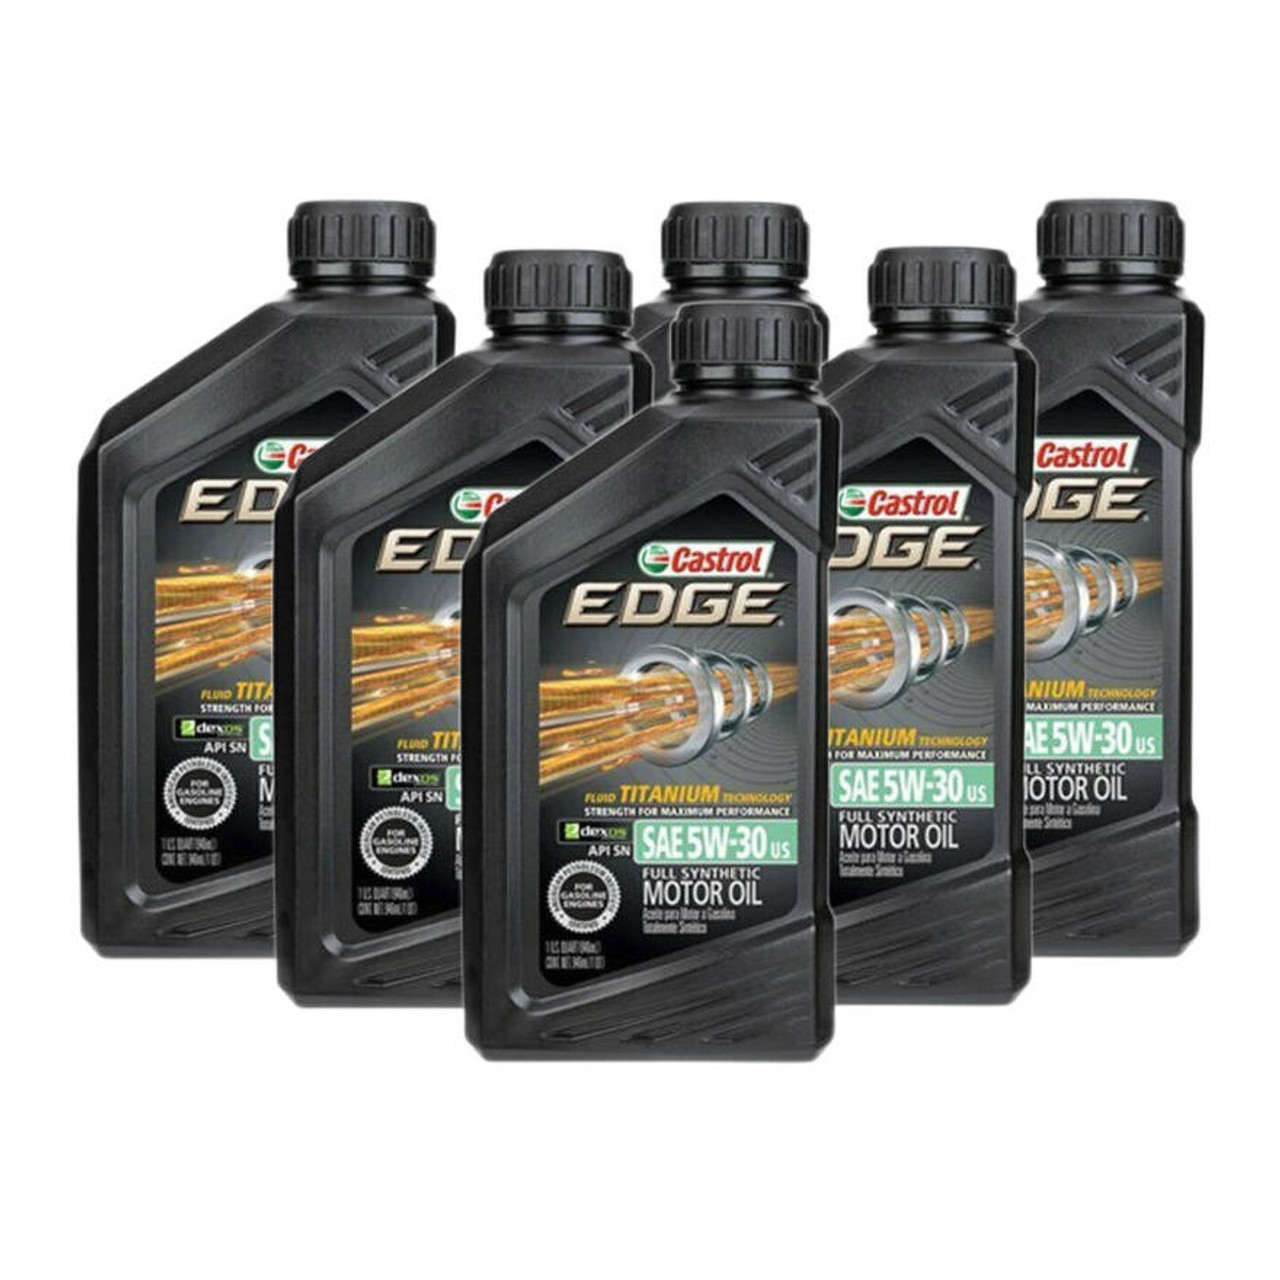 Castrol EDGE 5W-30 LL Advanced Full Synthetic Petrol & Diesel Engine Oil  5W30